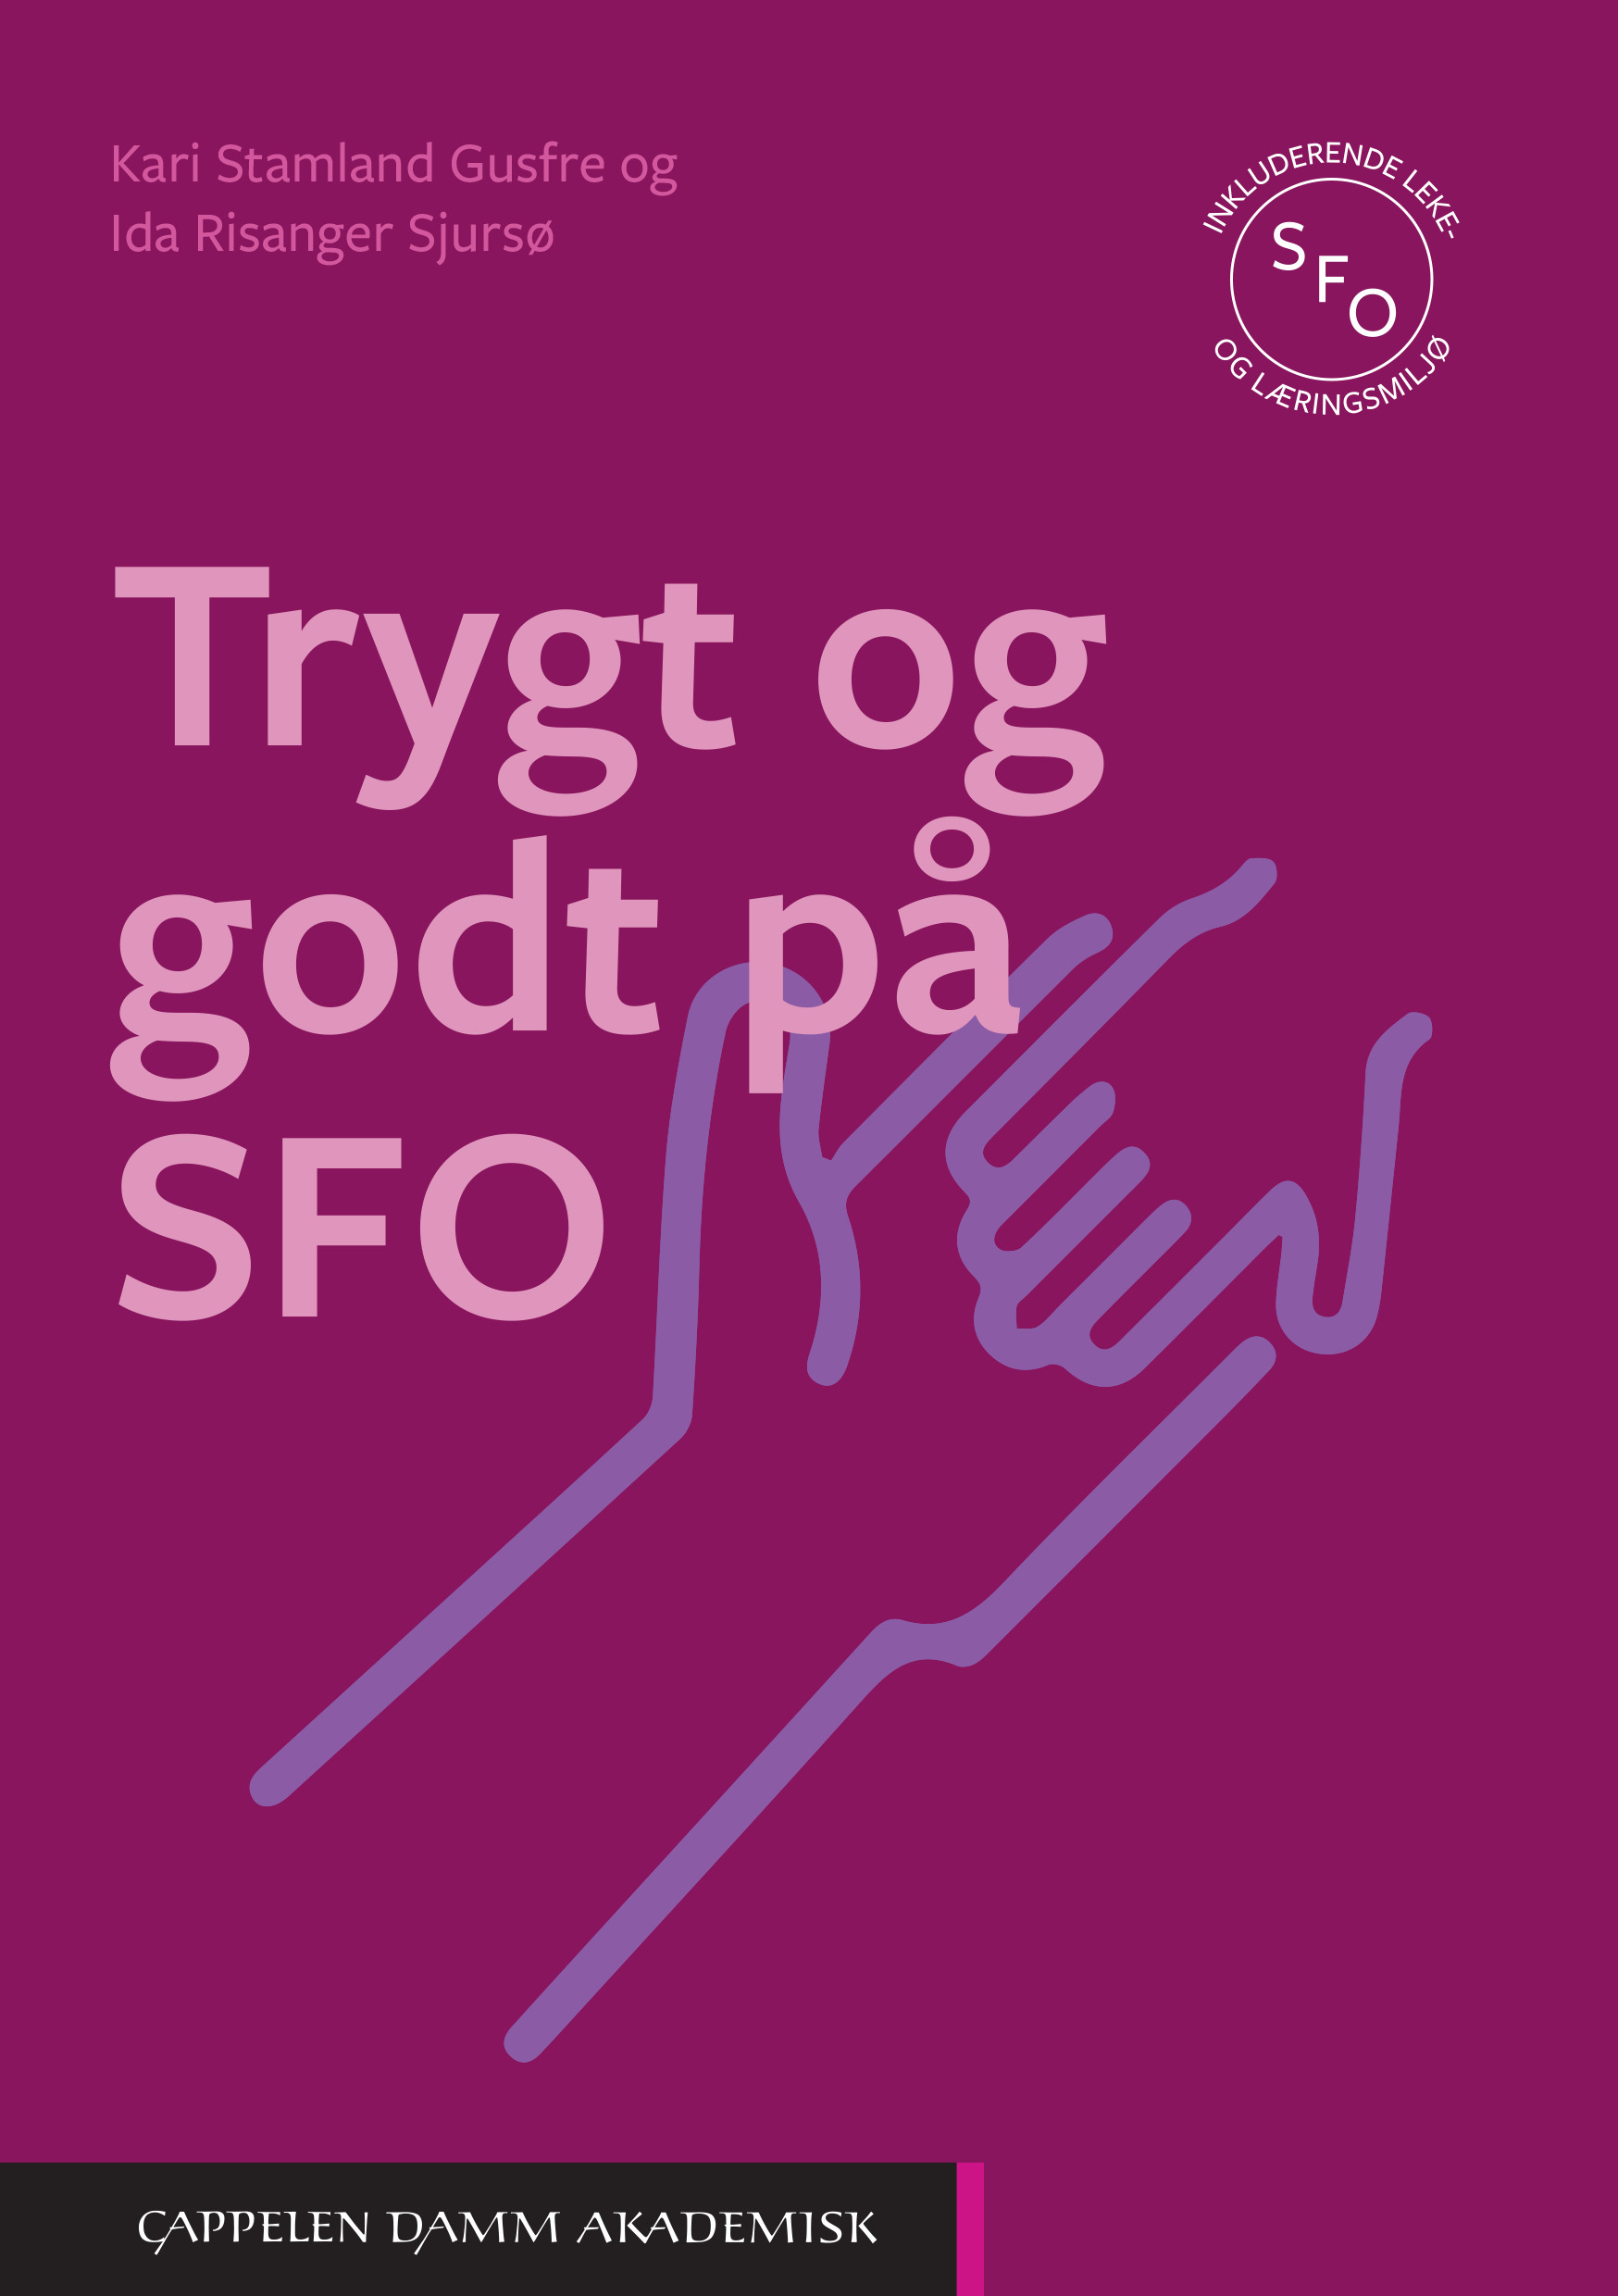 Omslag til boka Trygt og godt på SFO av Kari Stamland Gusfre og Ida Risanger SJursø. Utgitt på Cappelen Damm Akademisk i 2021.